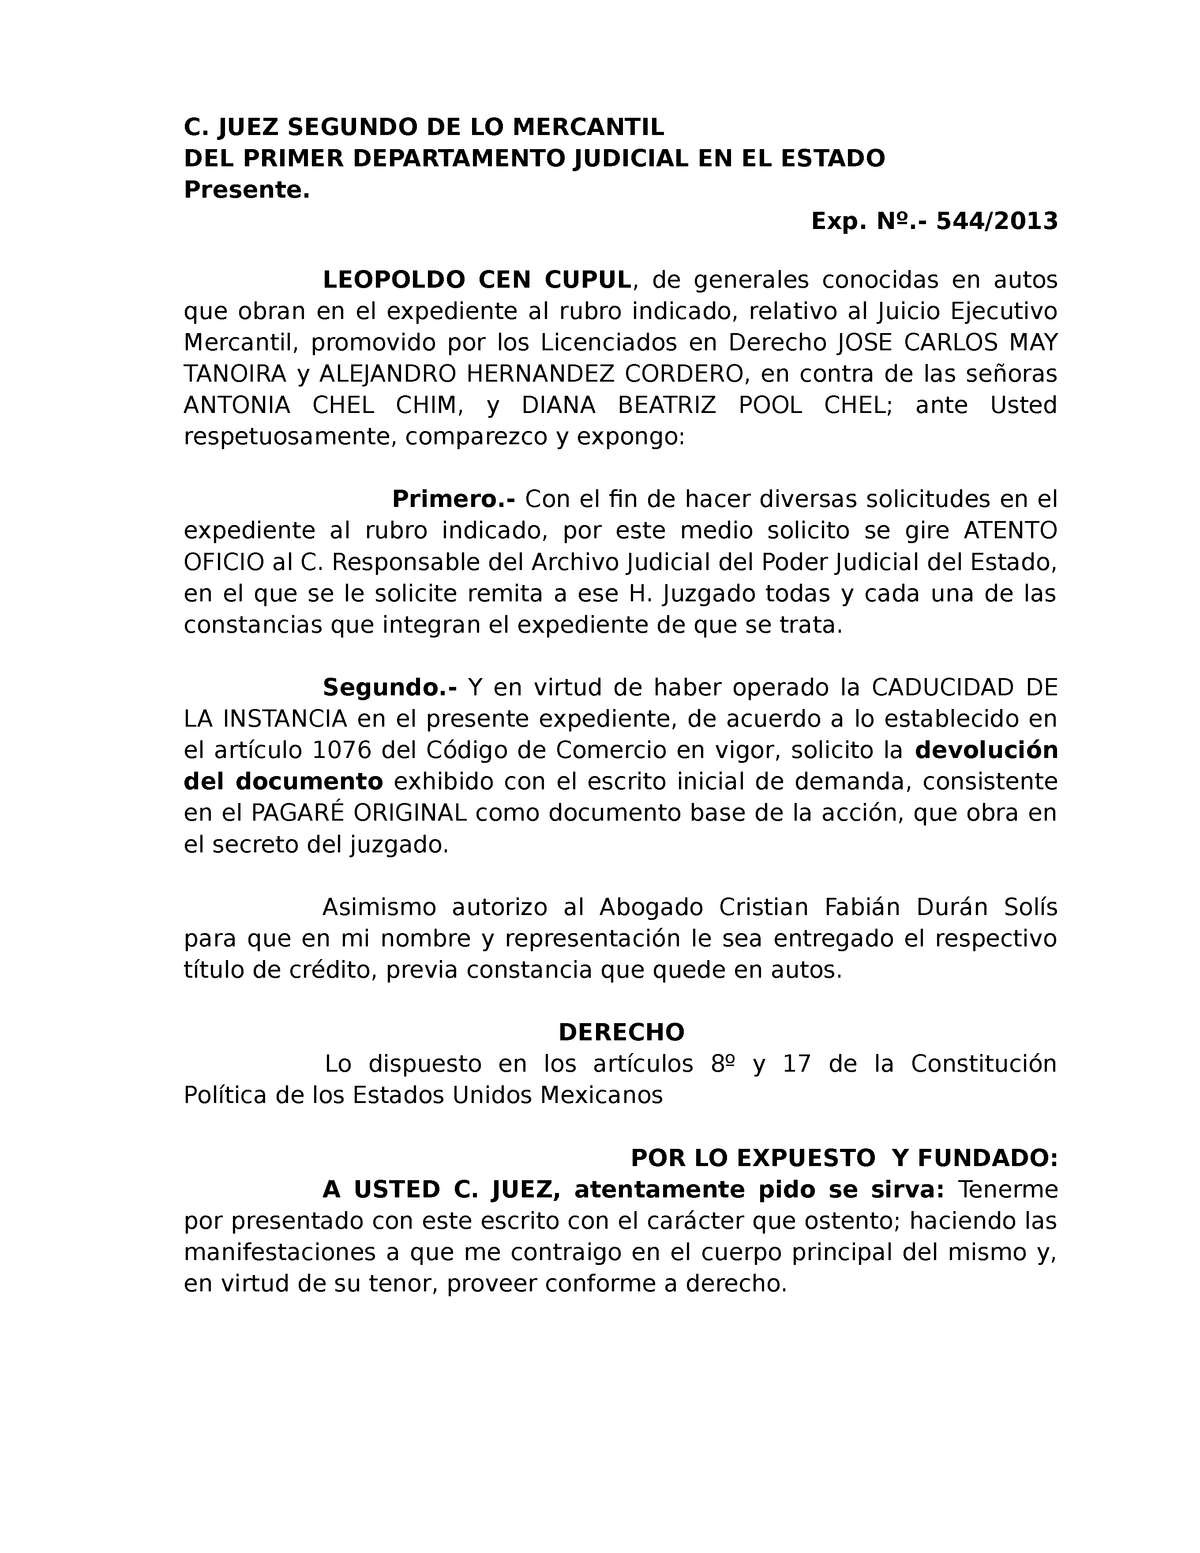 FORMATO PARA SOLICITAR DEVOLUCION DE DOCUMENTOS - C. JUEZ SEGUNDO DE LO  MERCANTIL DEL PRIMER - Studocu